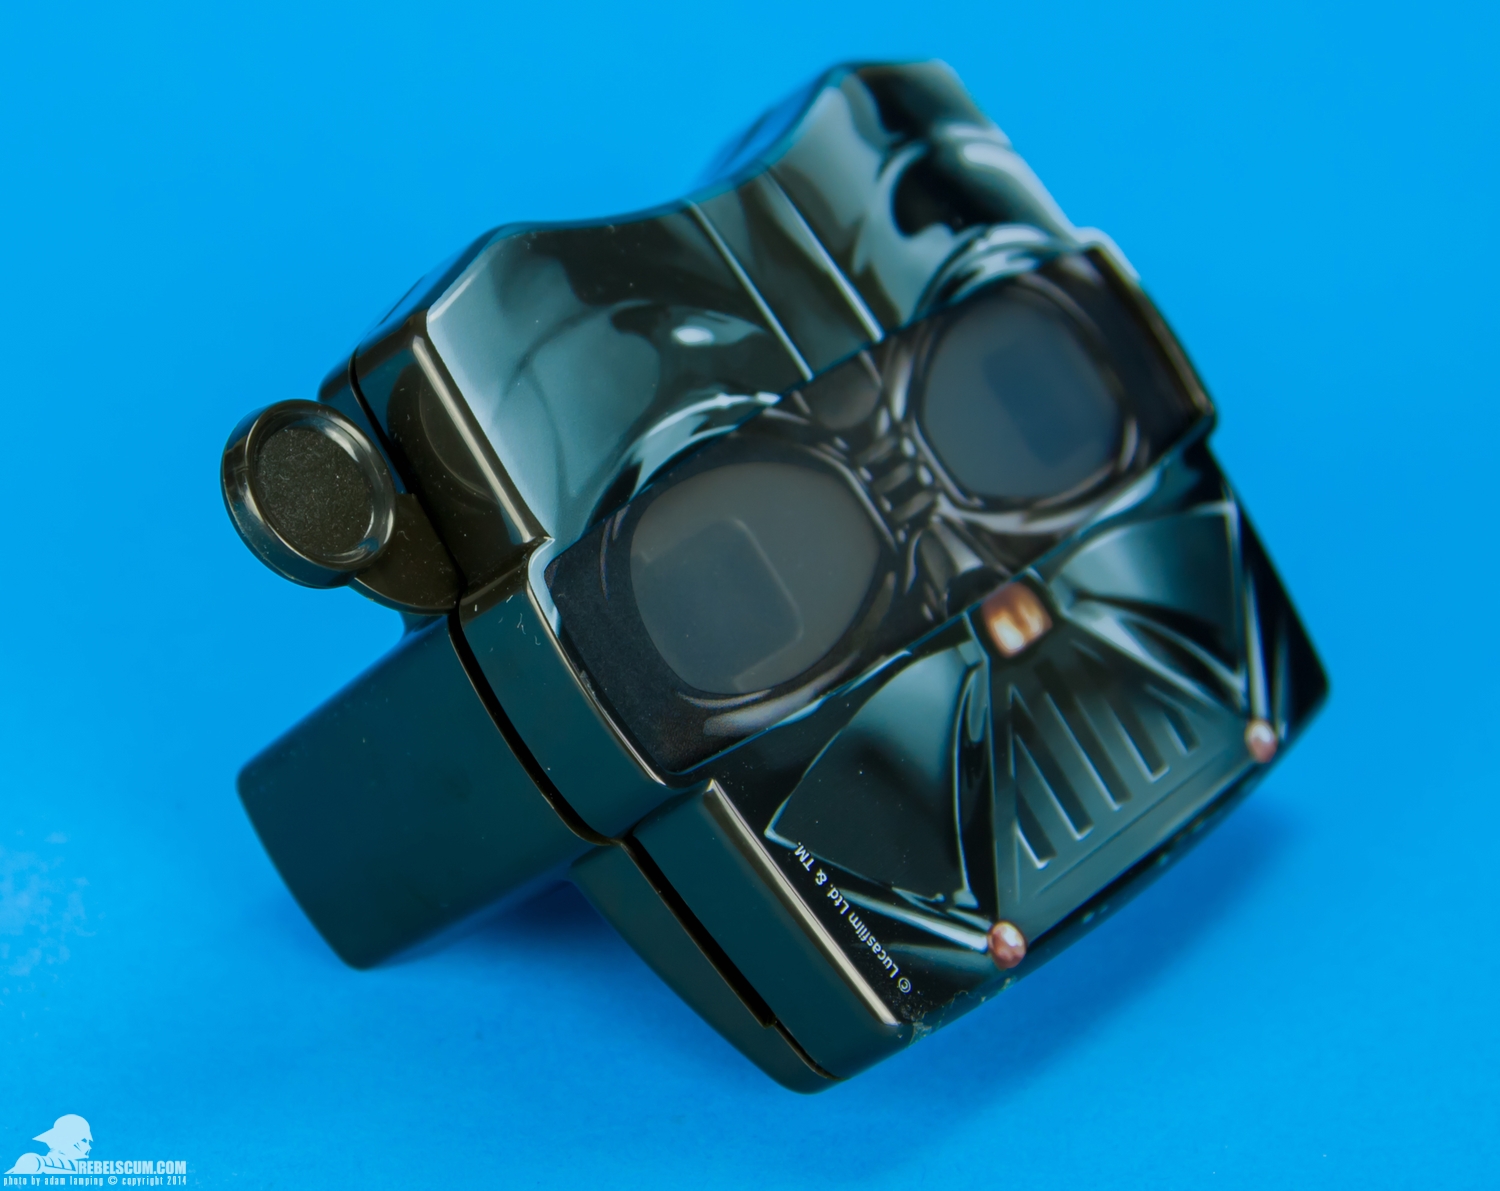 View-Master-Star-Wars-Darth-Vader-3D-Viewer-Gift-Set-002.jpg